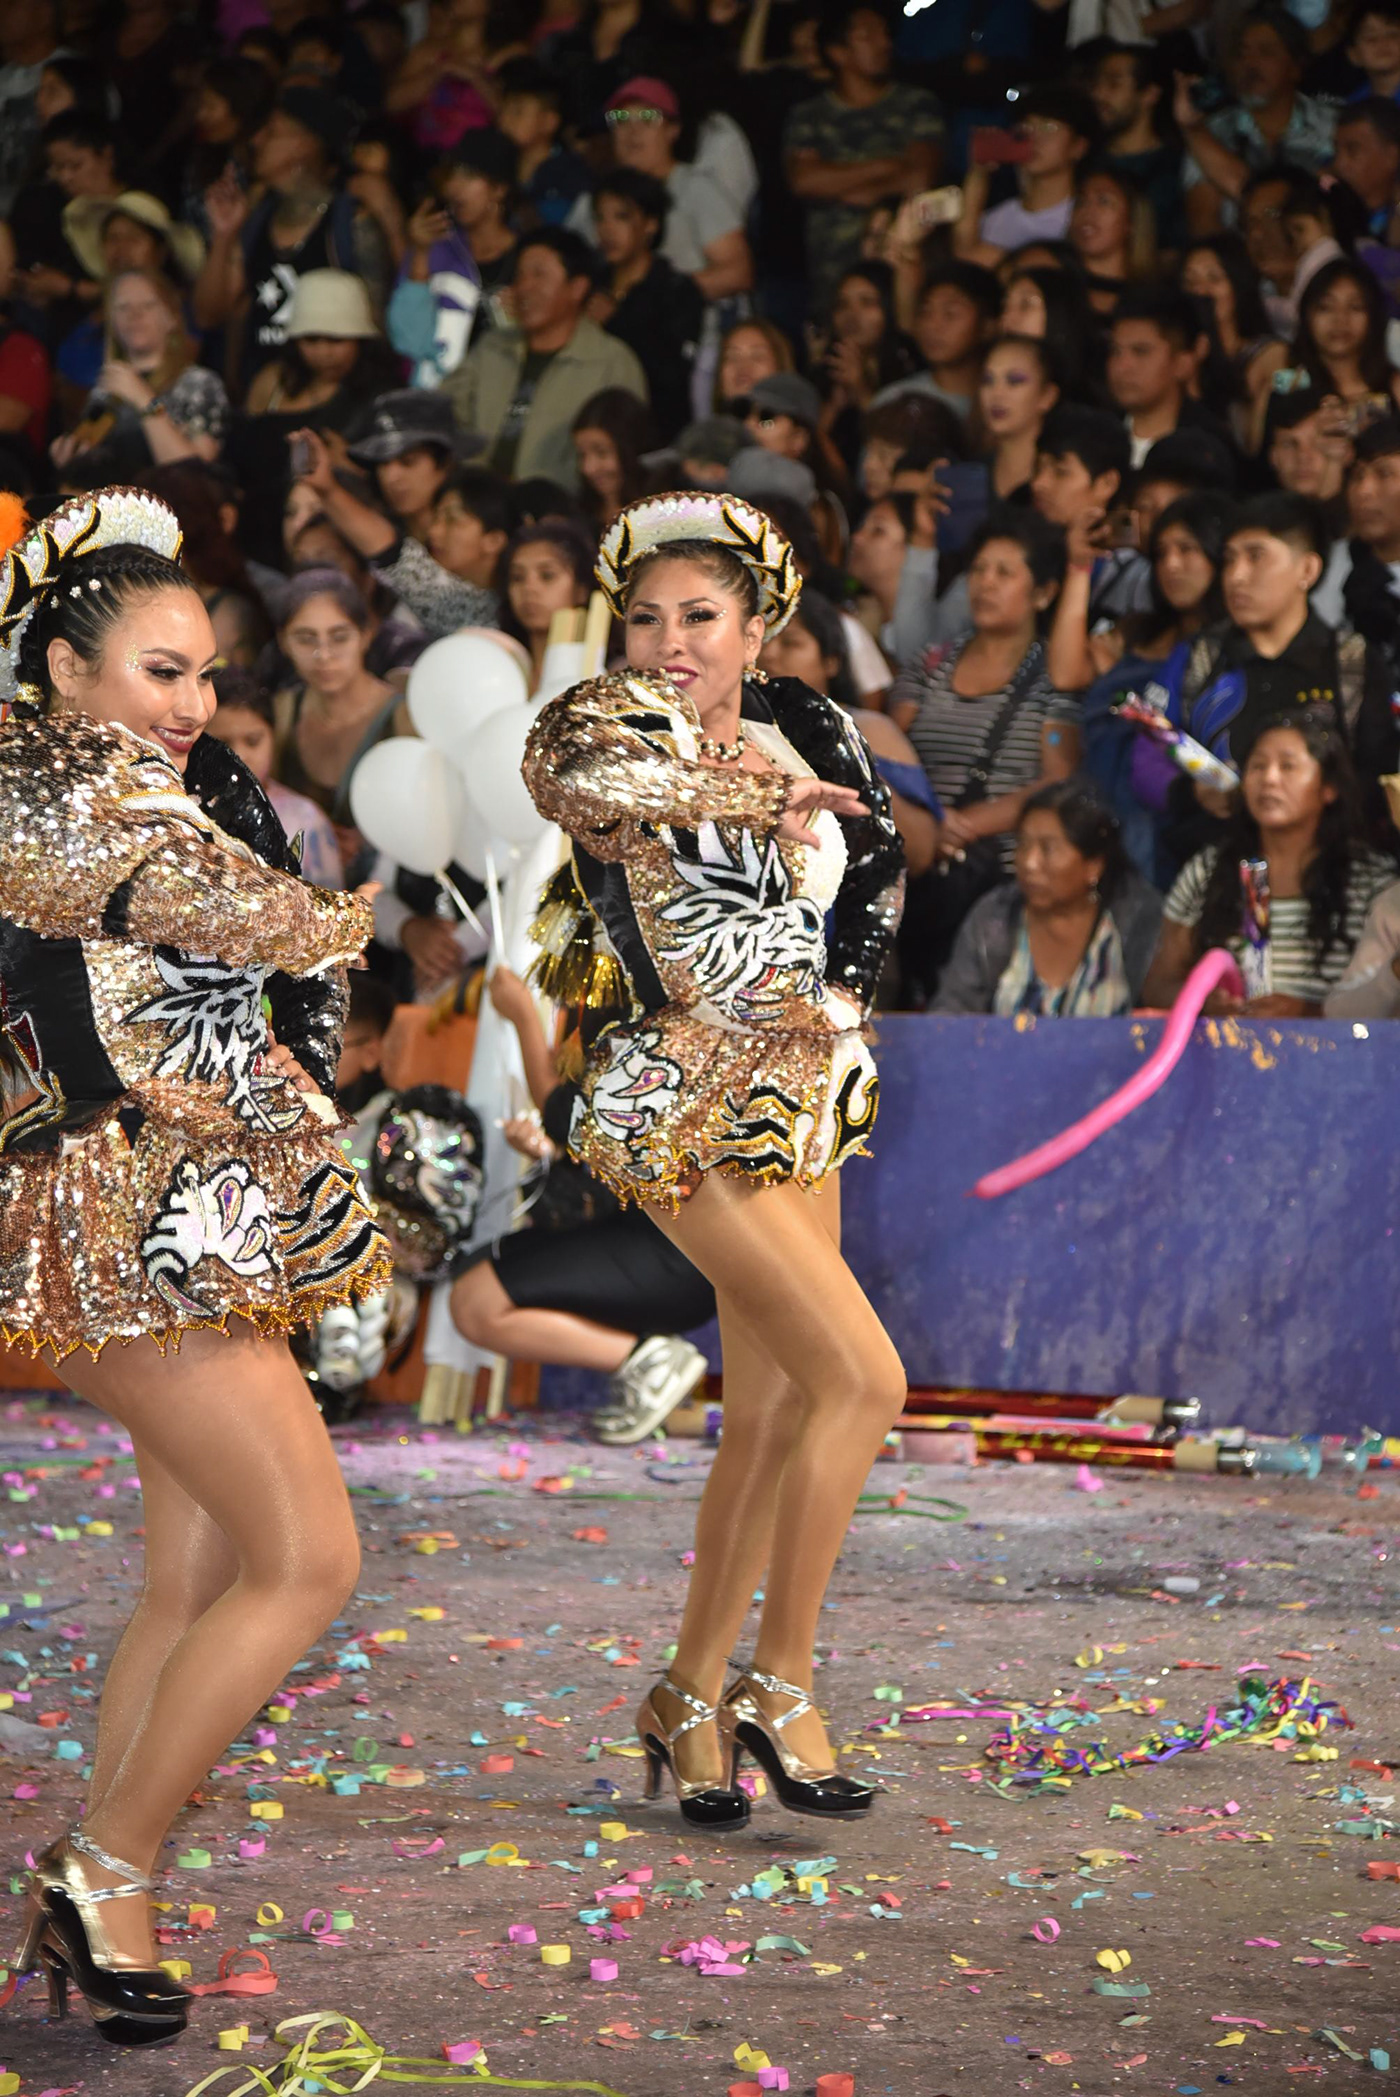 Carnaval andino Brasil bolivia peru arica musica danza